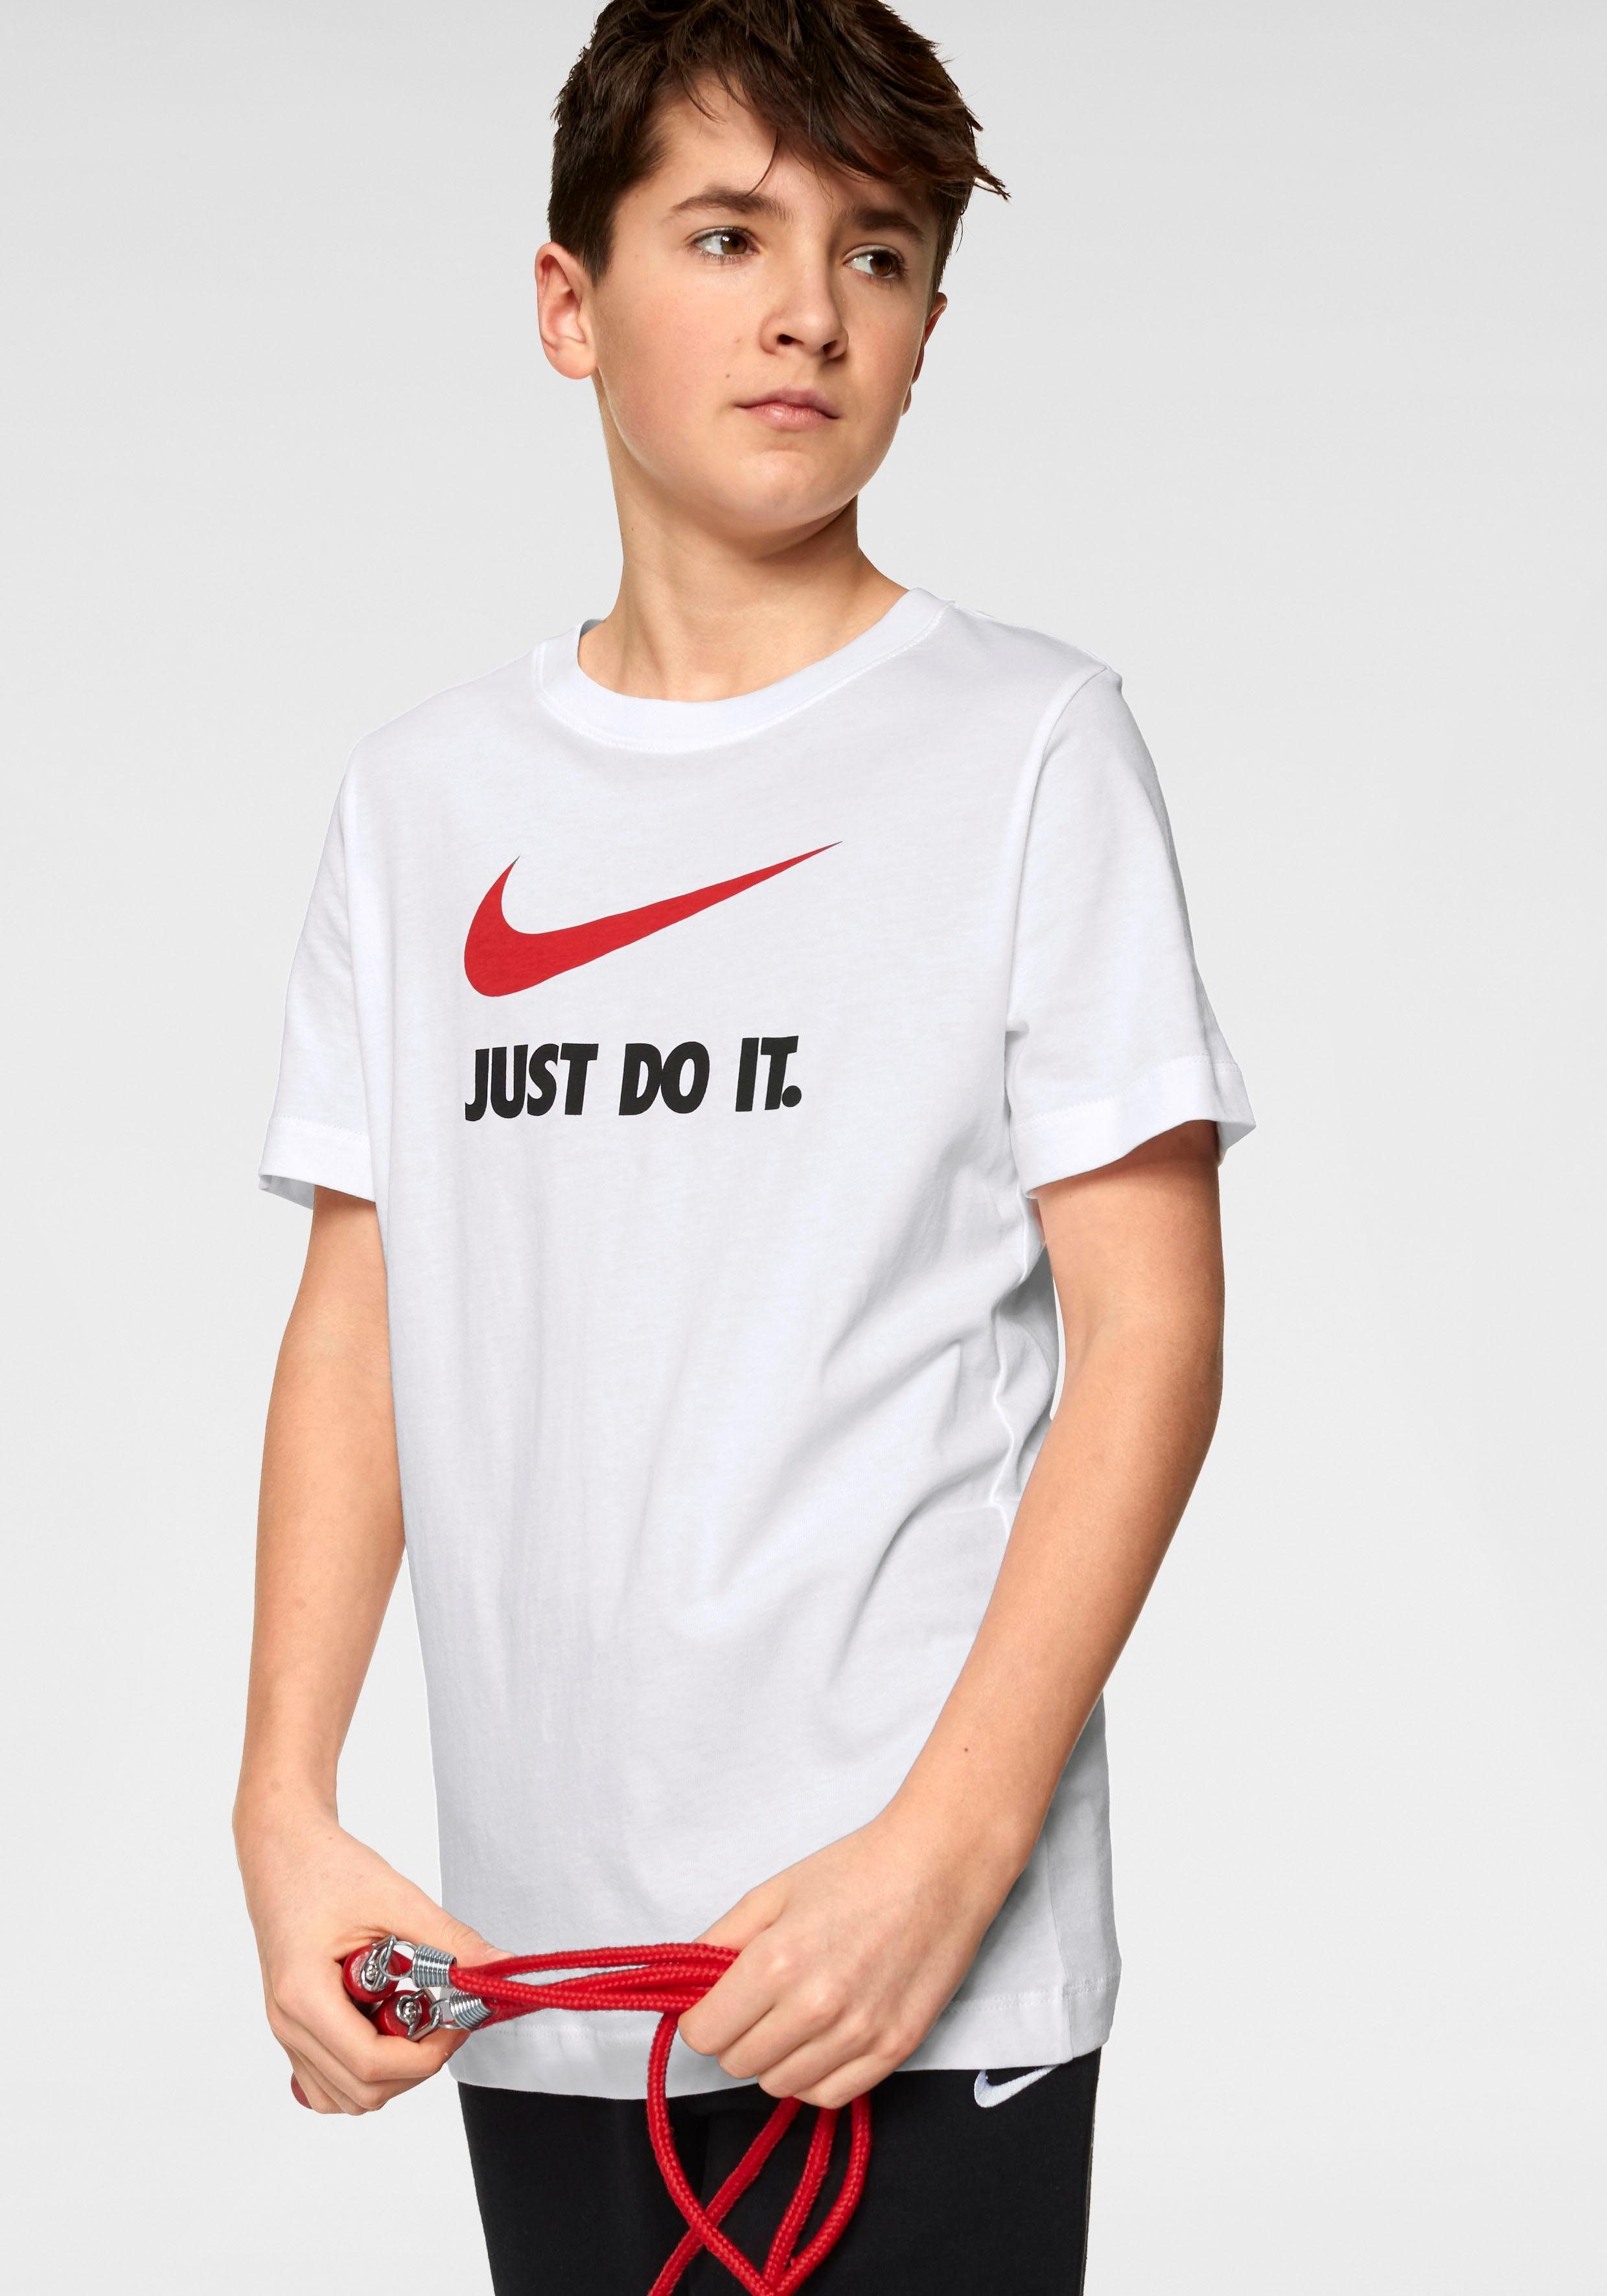 Jungen T-Shirts online kaufen | OTTO